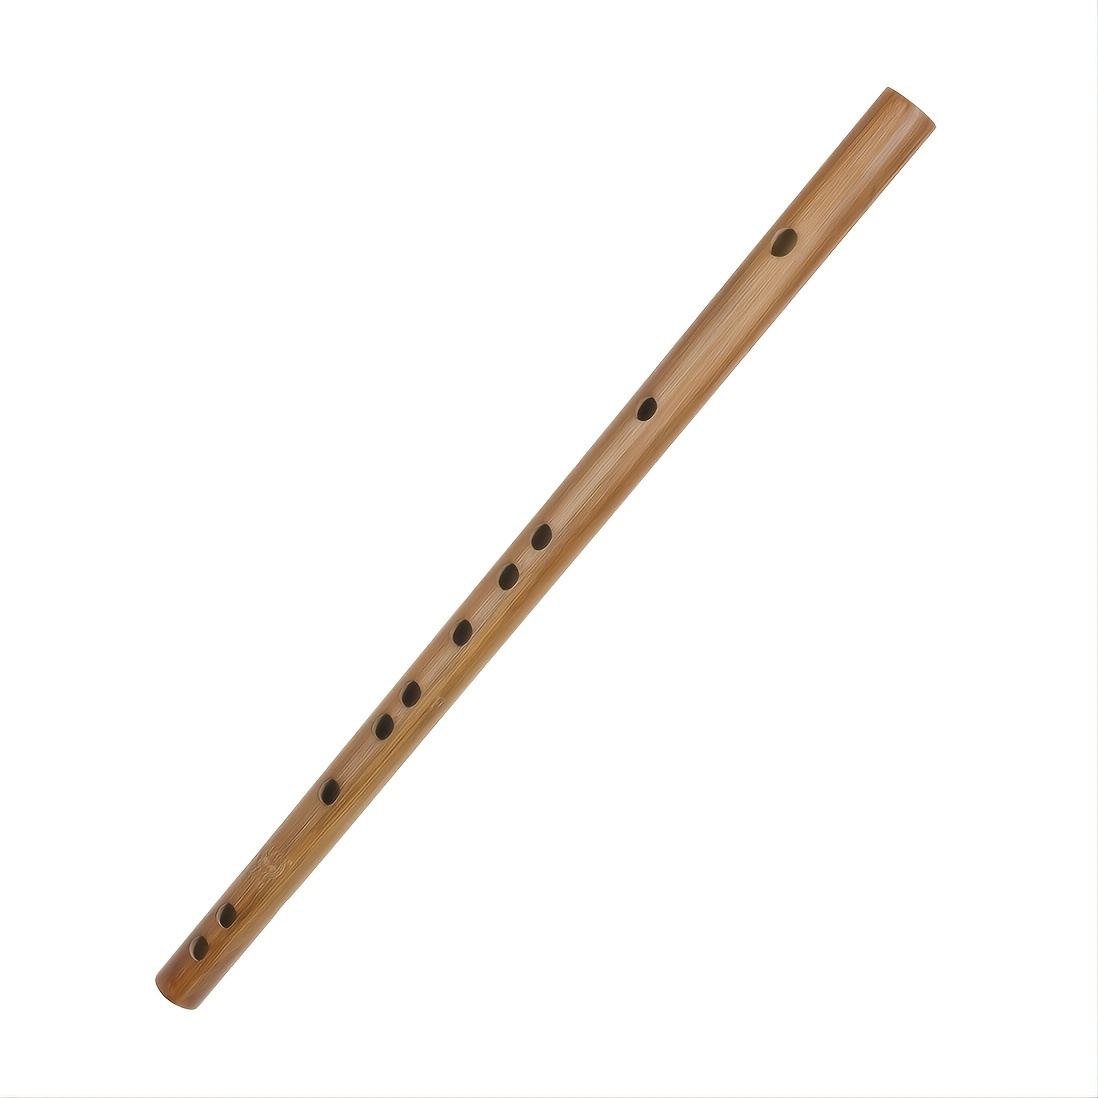 Buy Dizi Flute Professional Level Chinese Rosy Sandalwood Flute